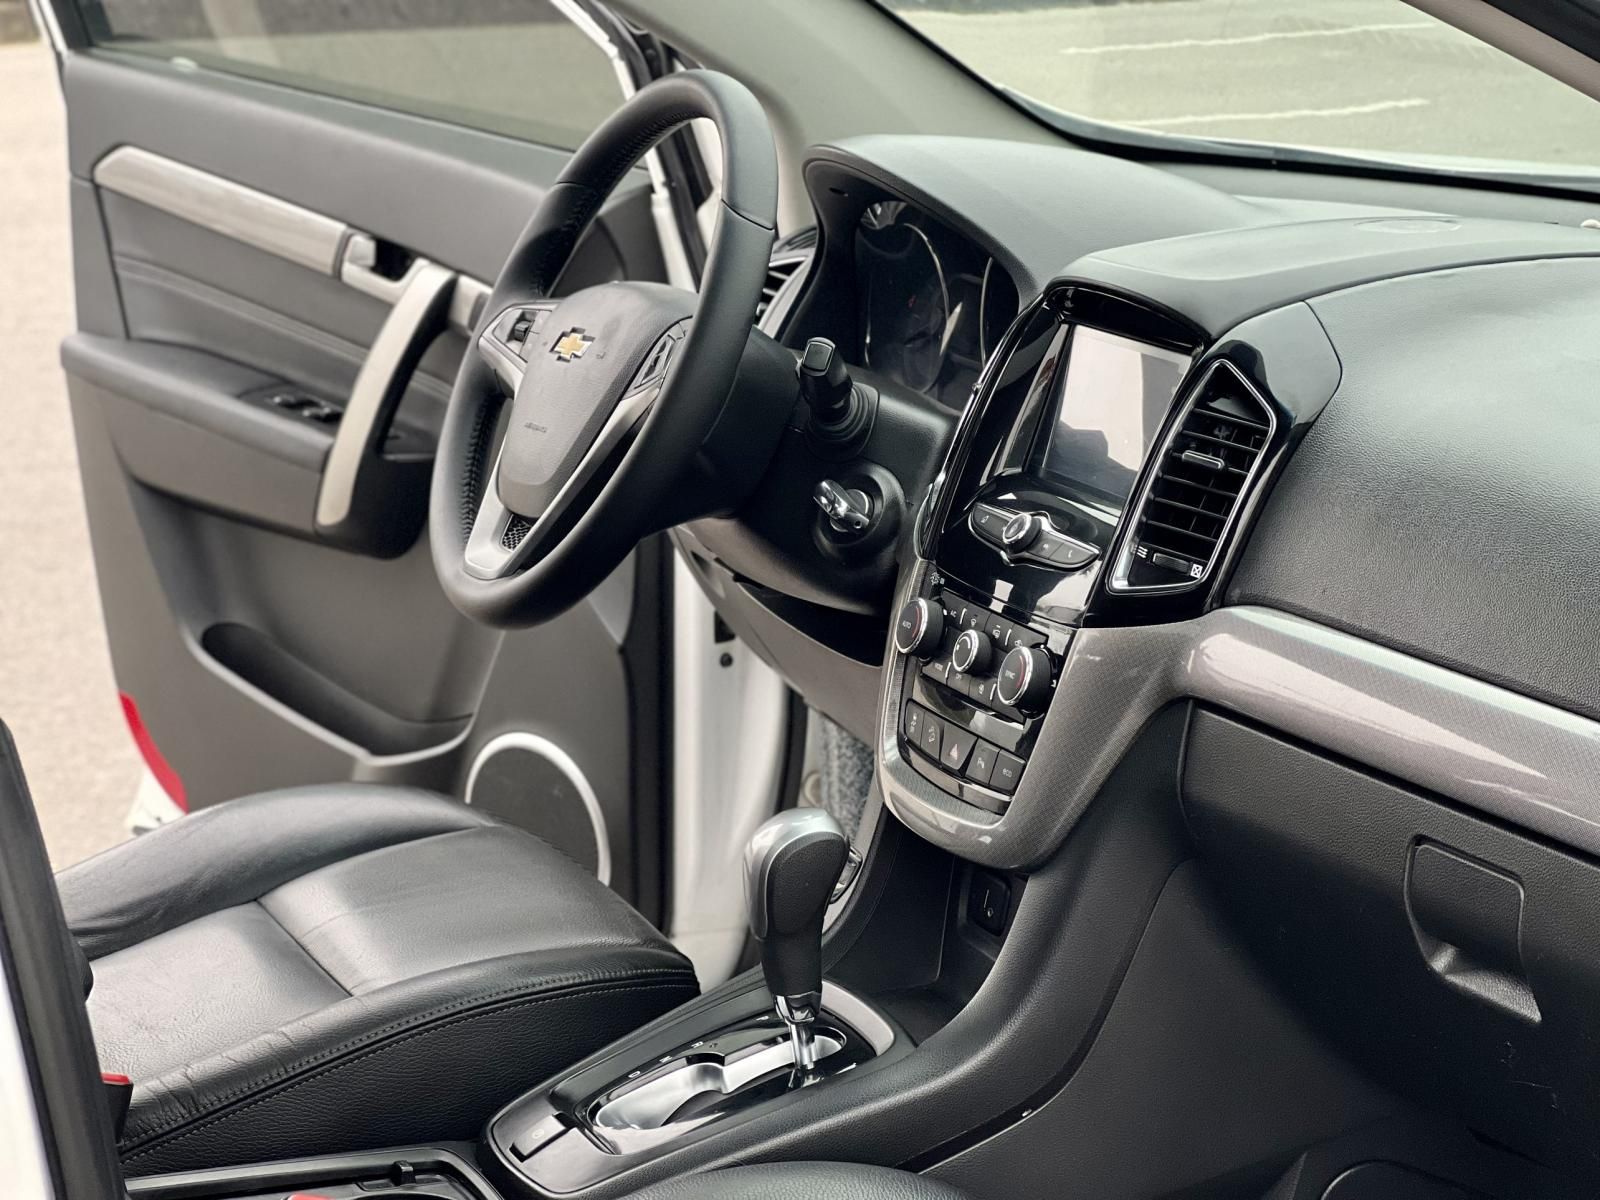 Chevrolet Captiva 2016 - Check hãng mọi nơi theo chỉ định của khách hàng